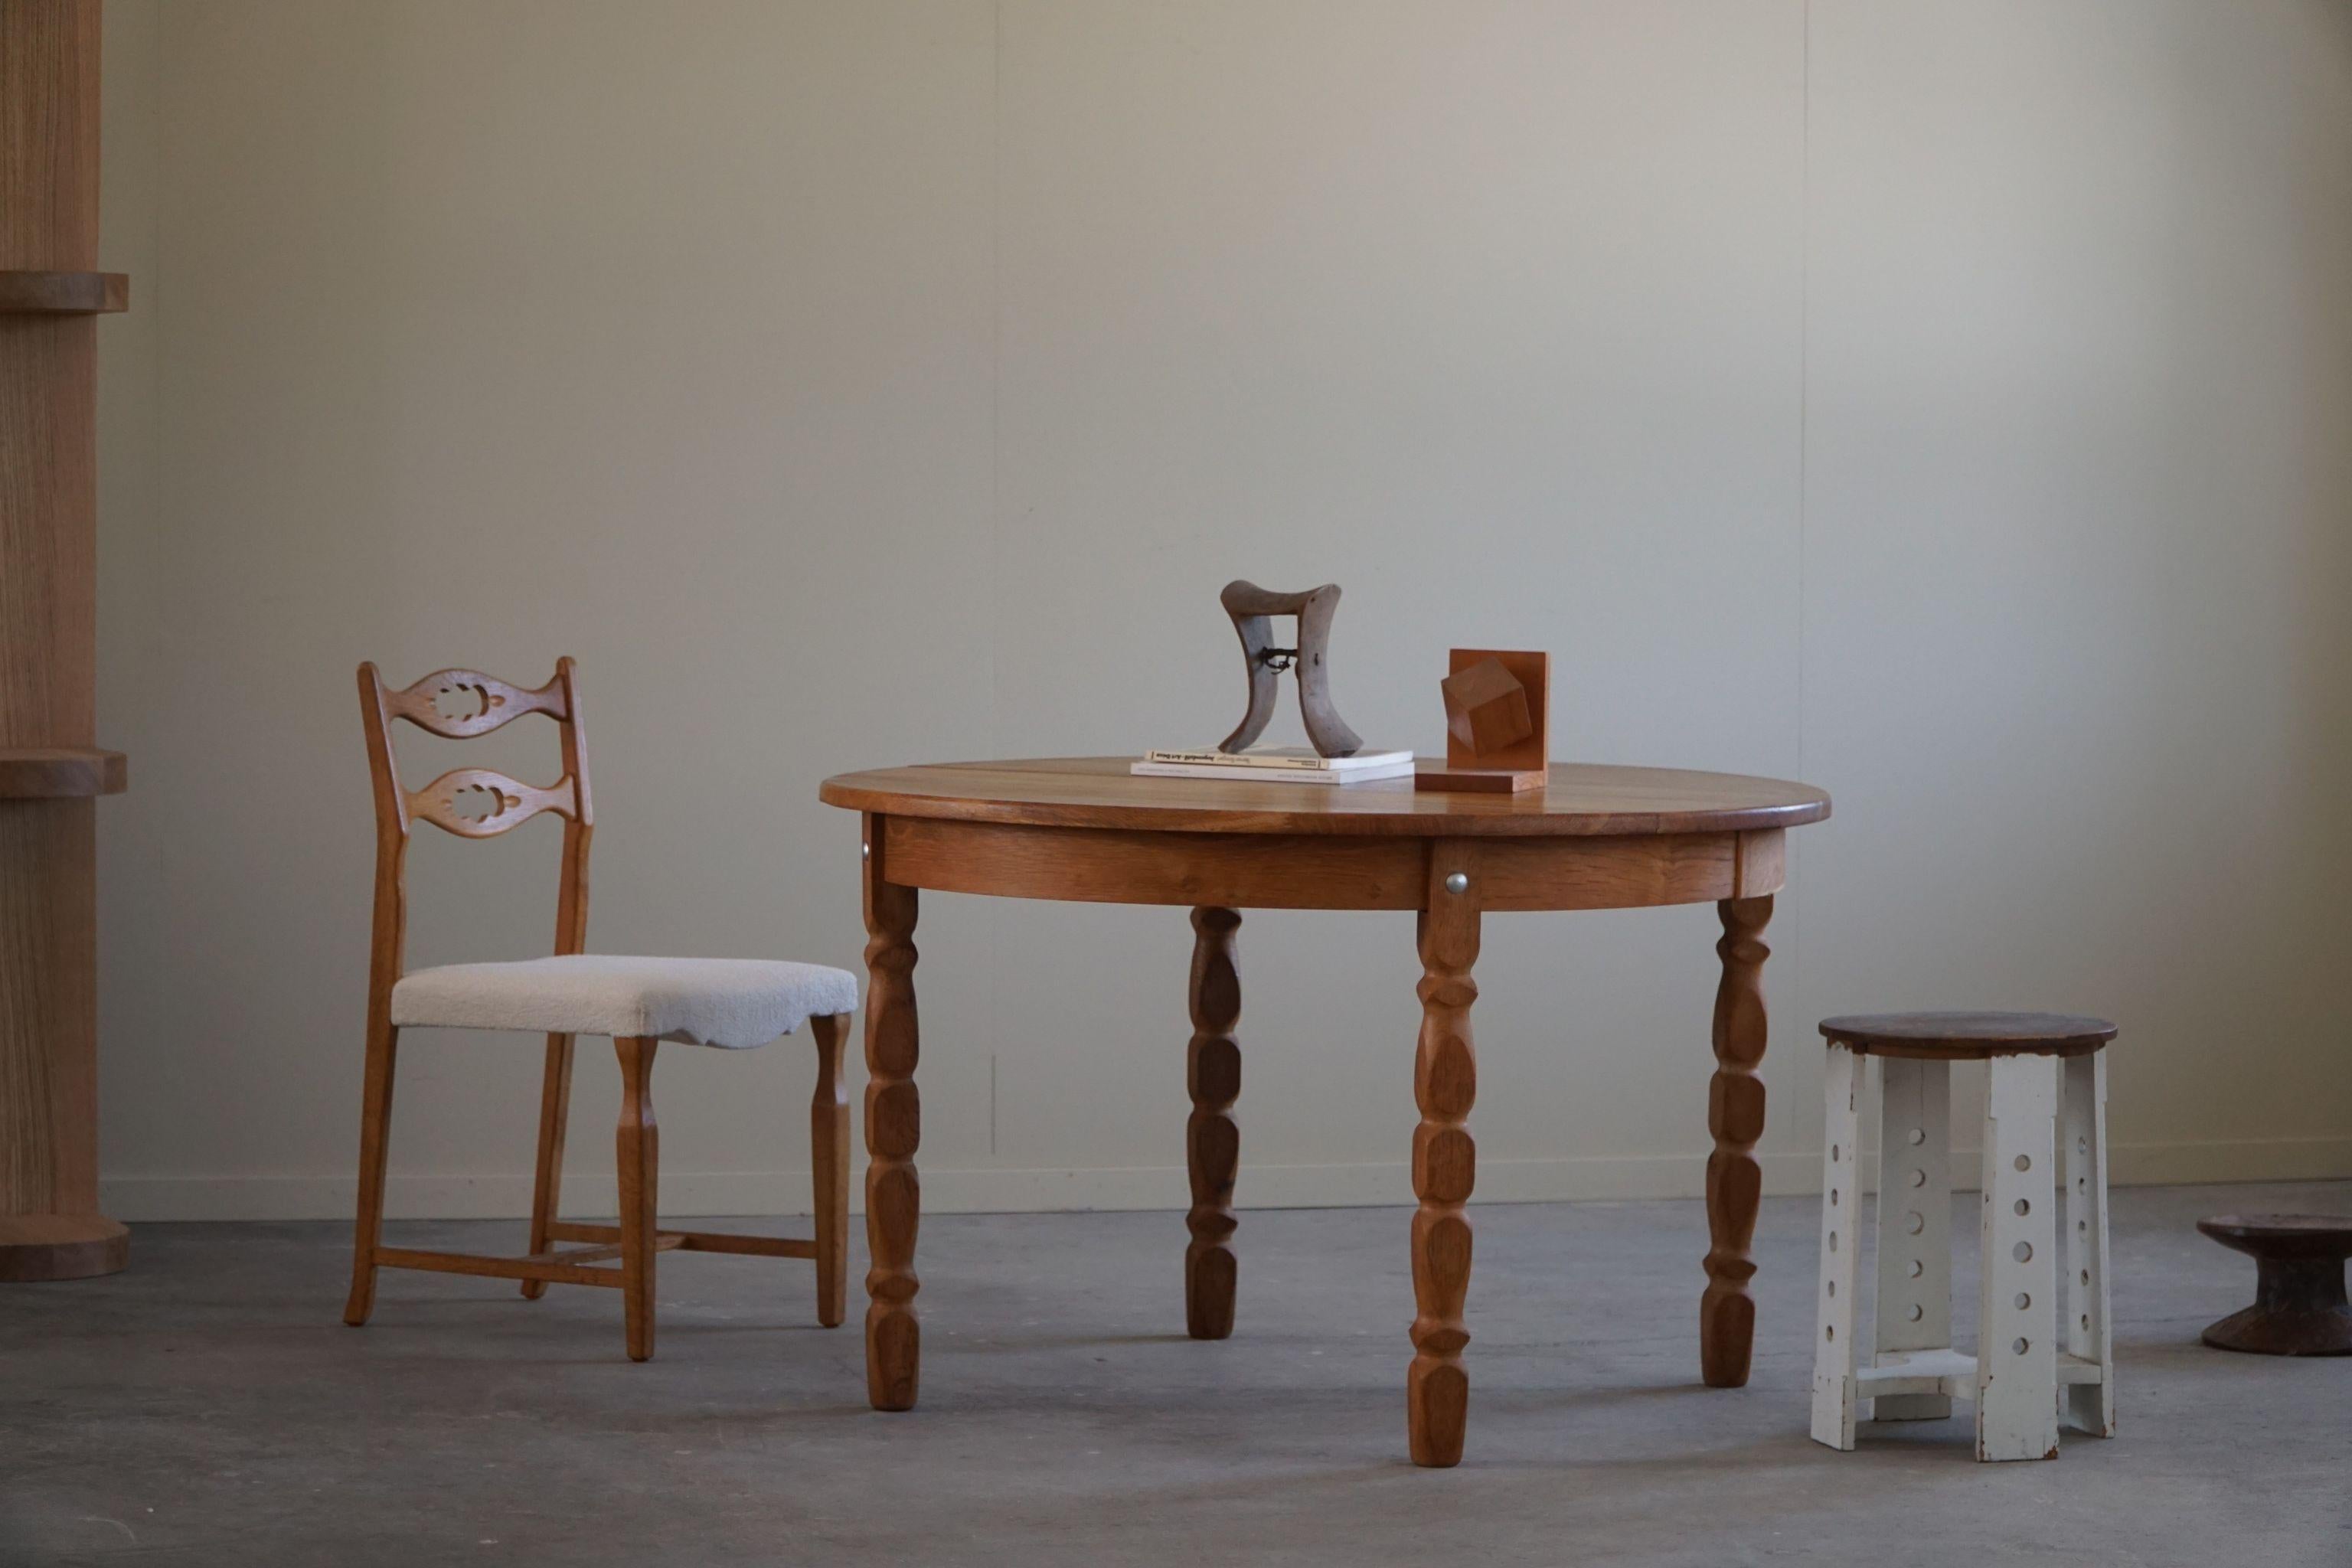 Table de salle à manger ronde classique en chêne massif avec deux rallonges, fabriquée dans les années 1960 par un ébéniste danois. Une figure sculpturale pour un intérieur moderne.

Cette table brutaliste est dotée de pieds incurvés et d'une grande